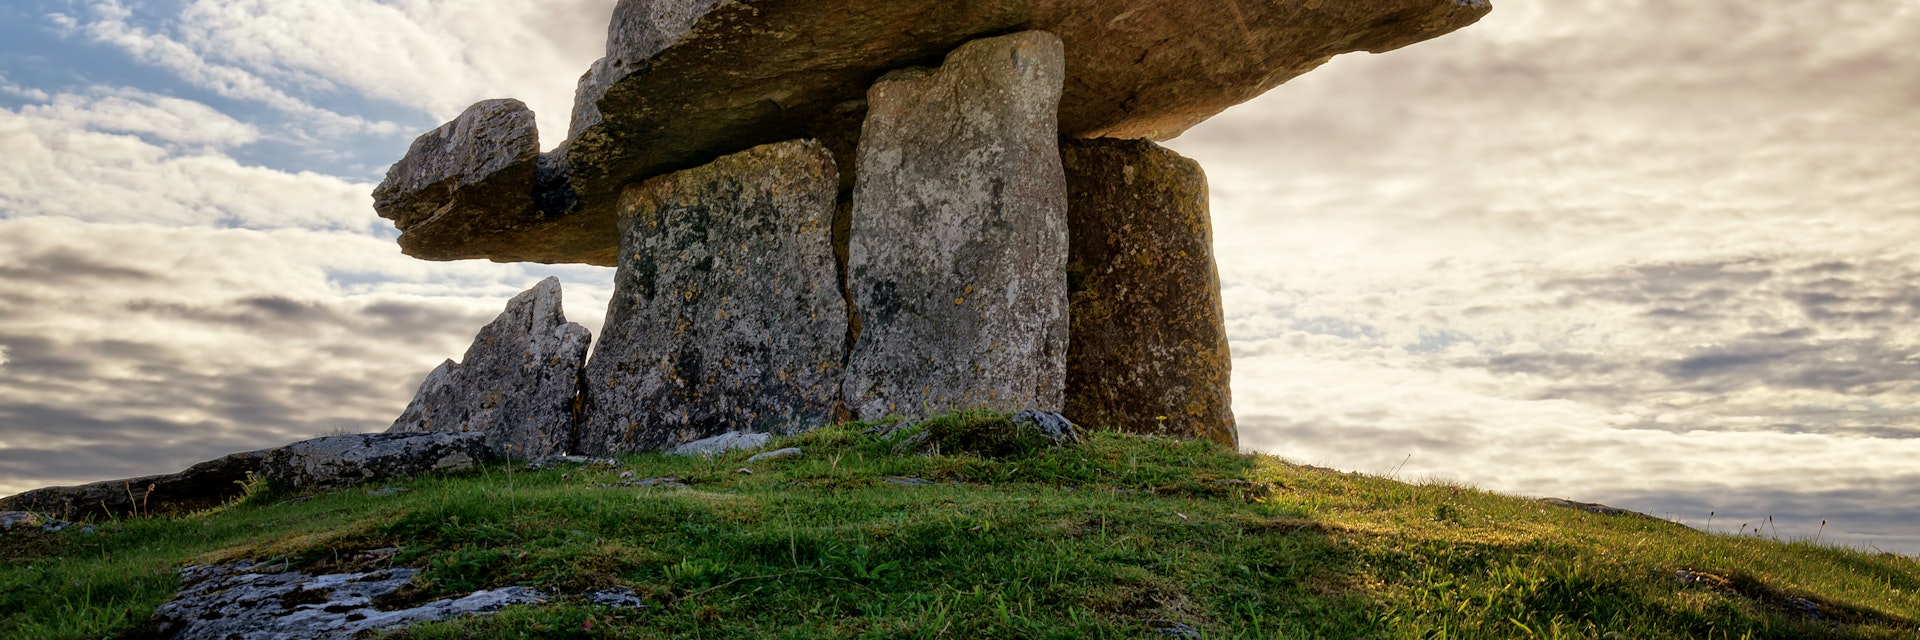 Poulnabrone dolmen in Burren, County Clare, Ireland.